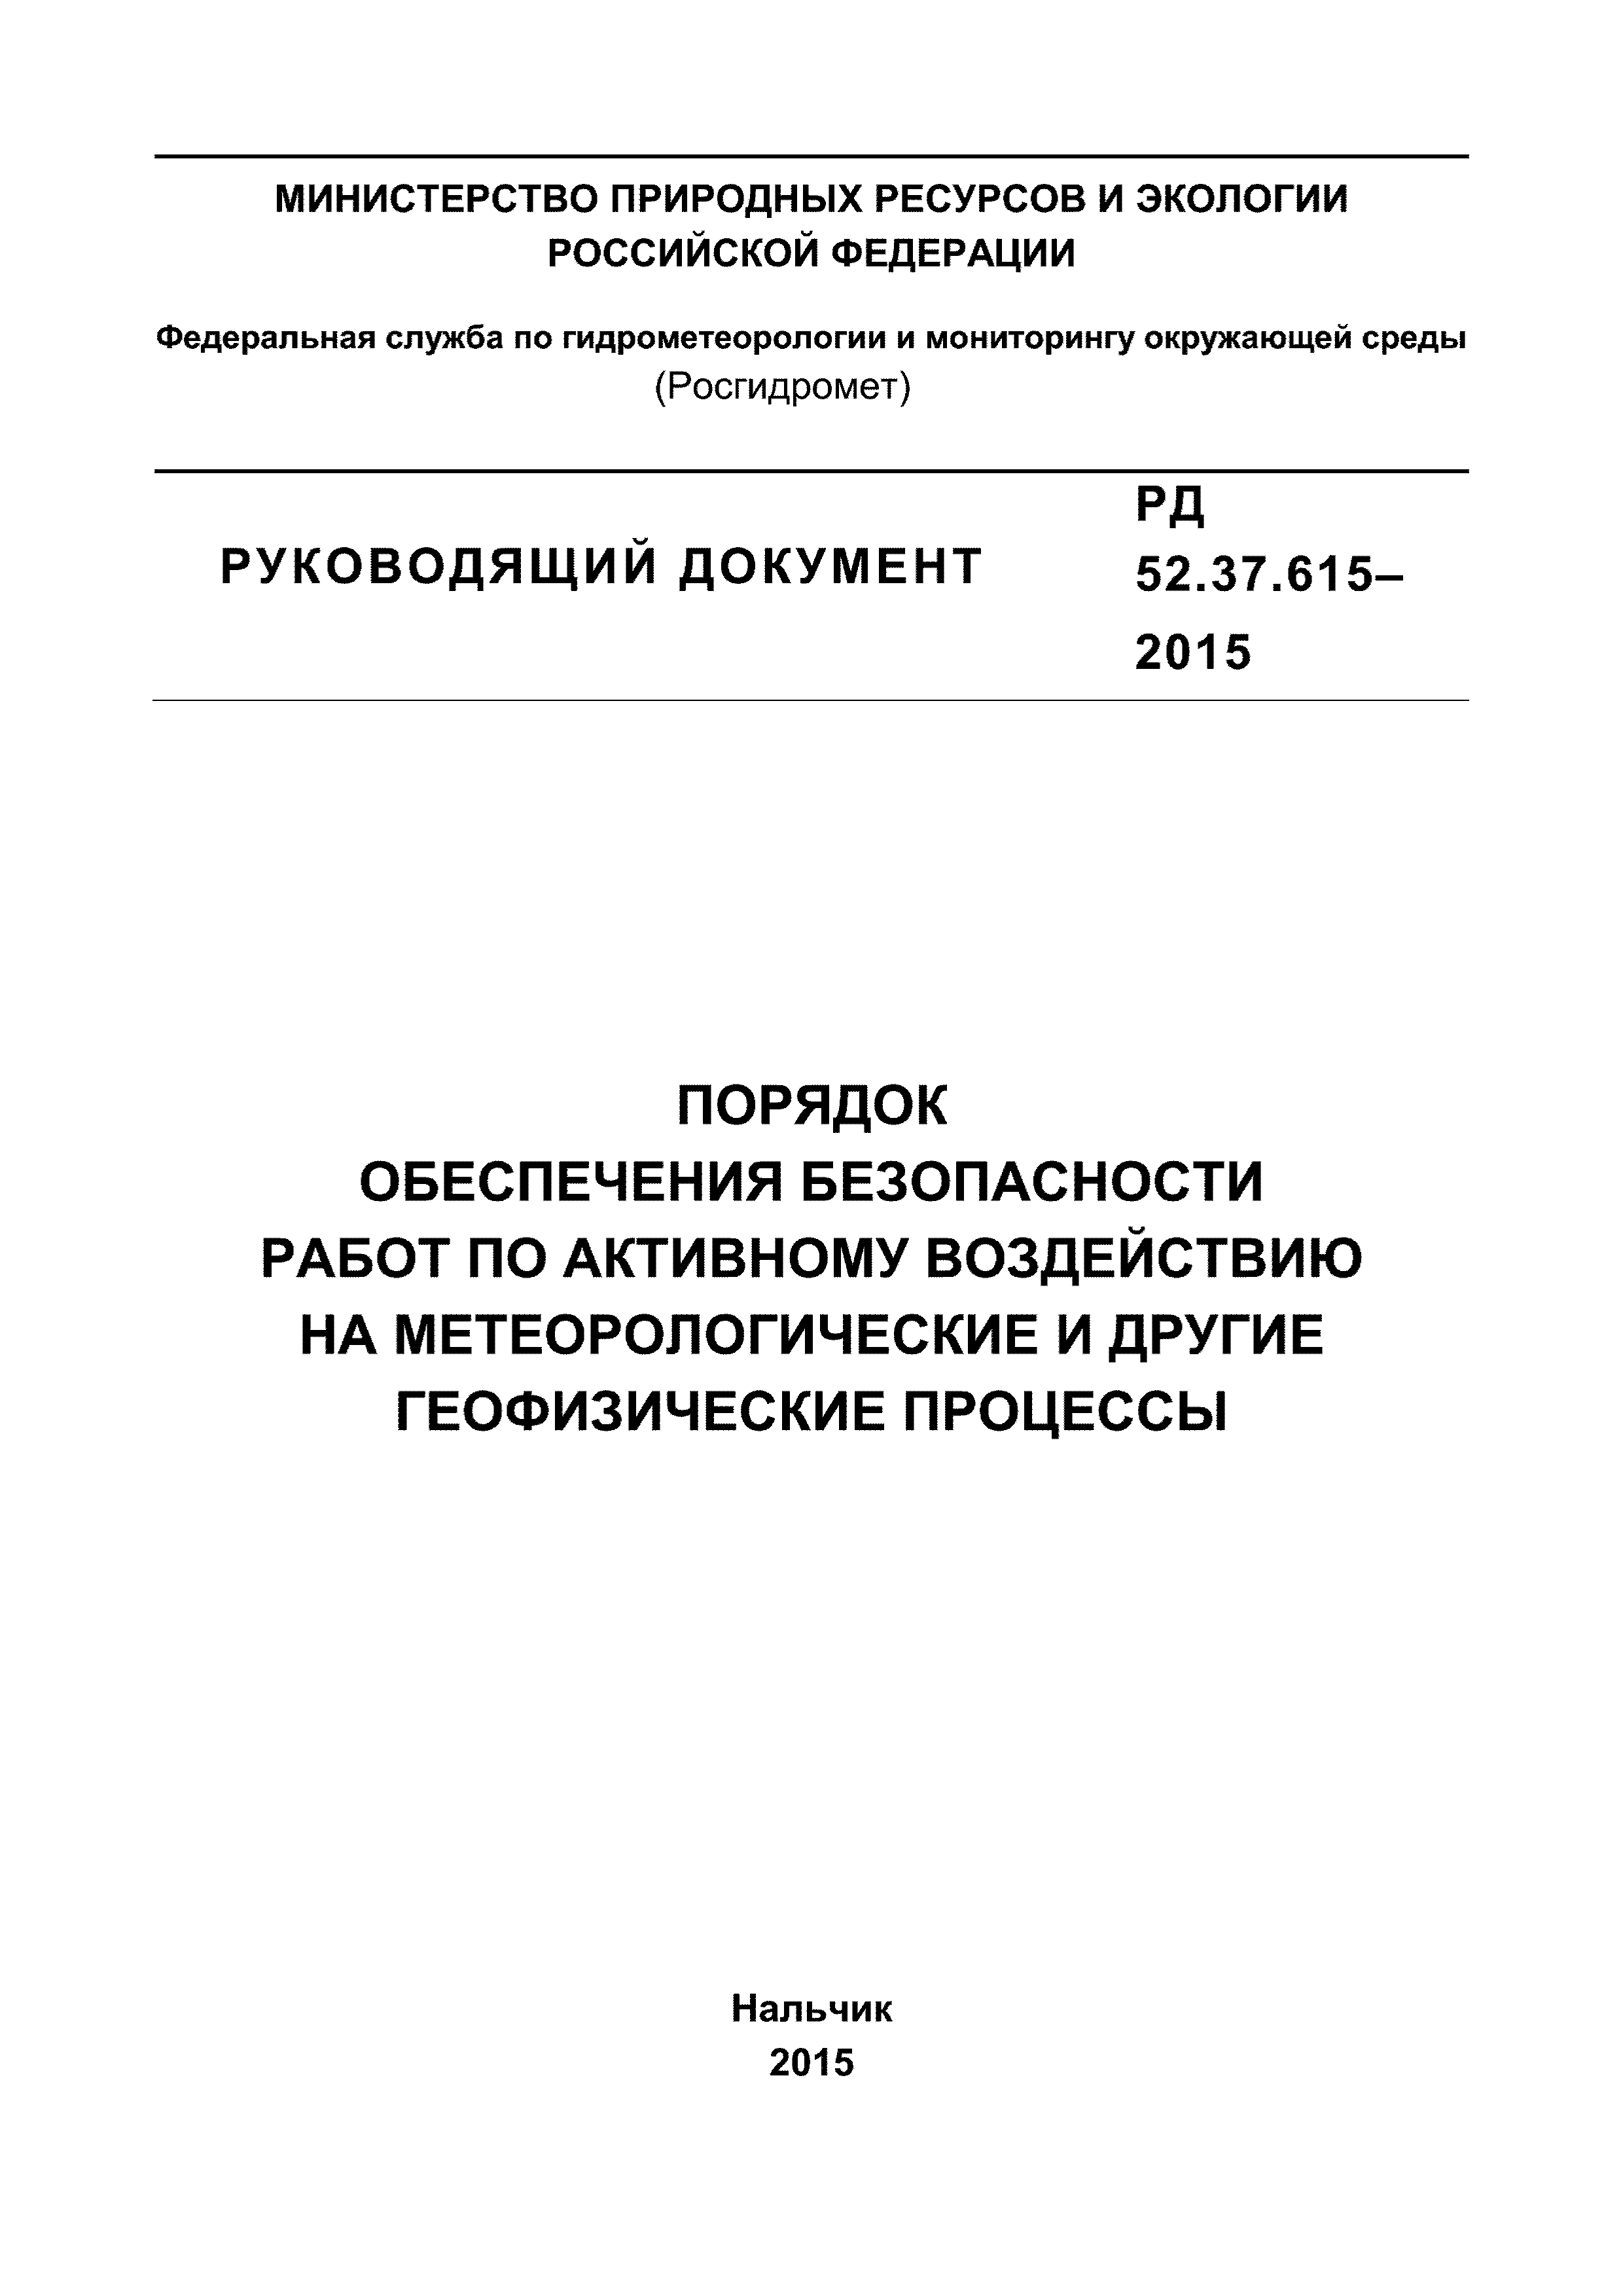 РД 52.37.615-2015